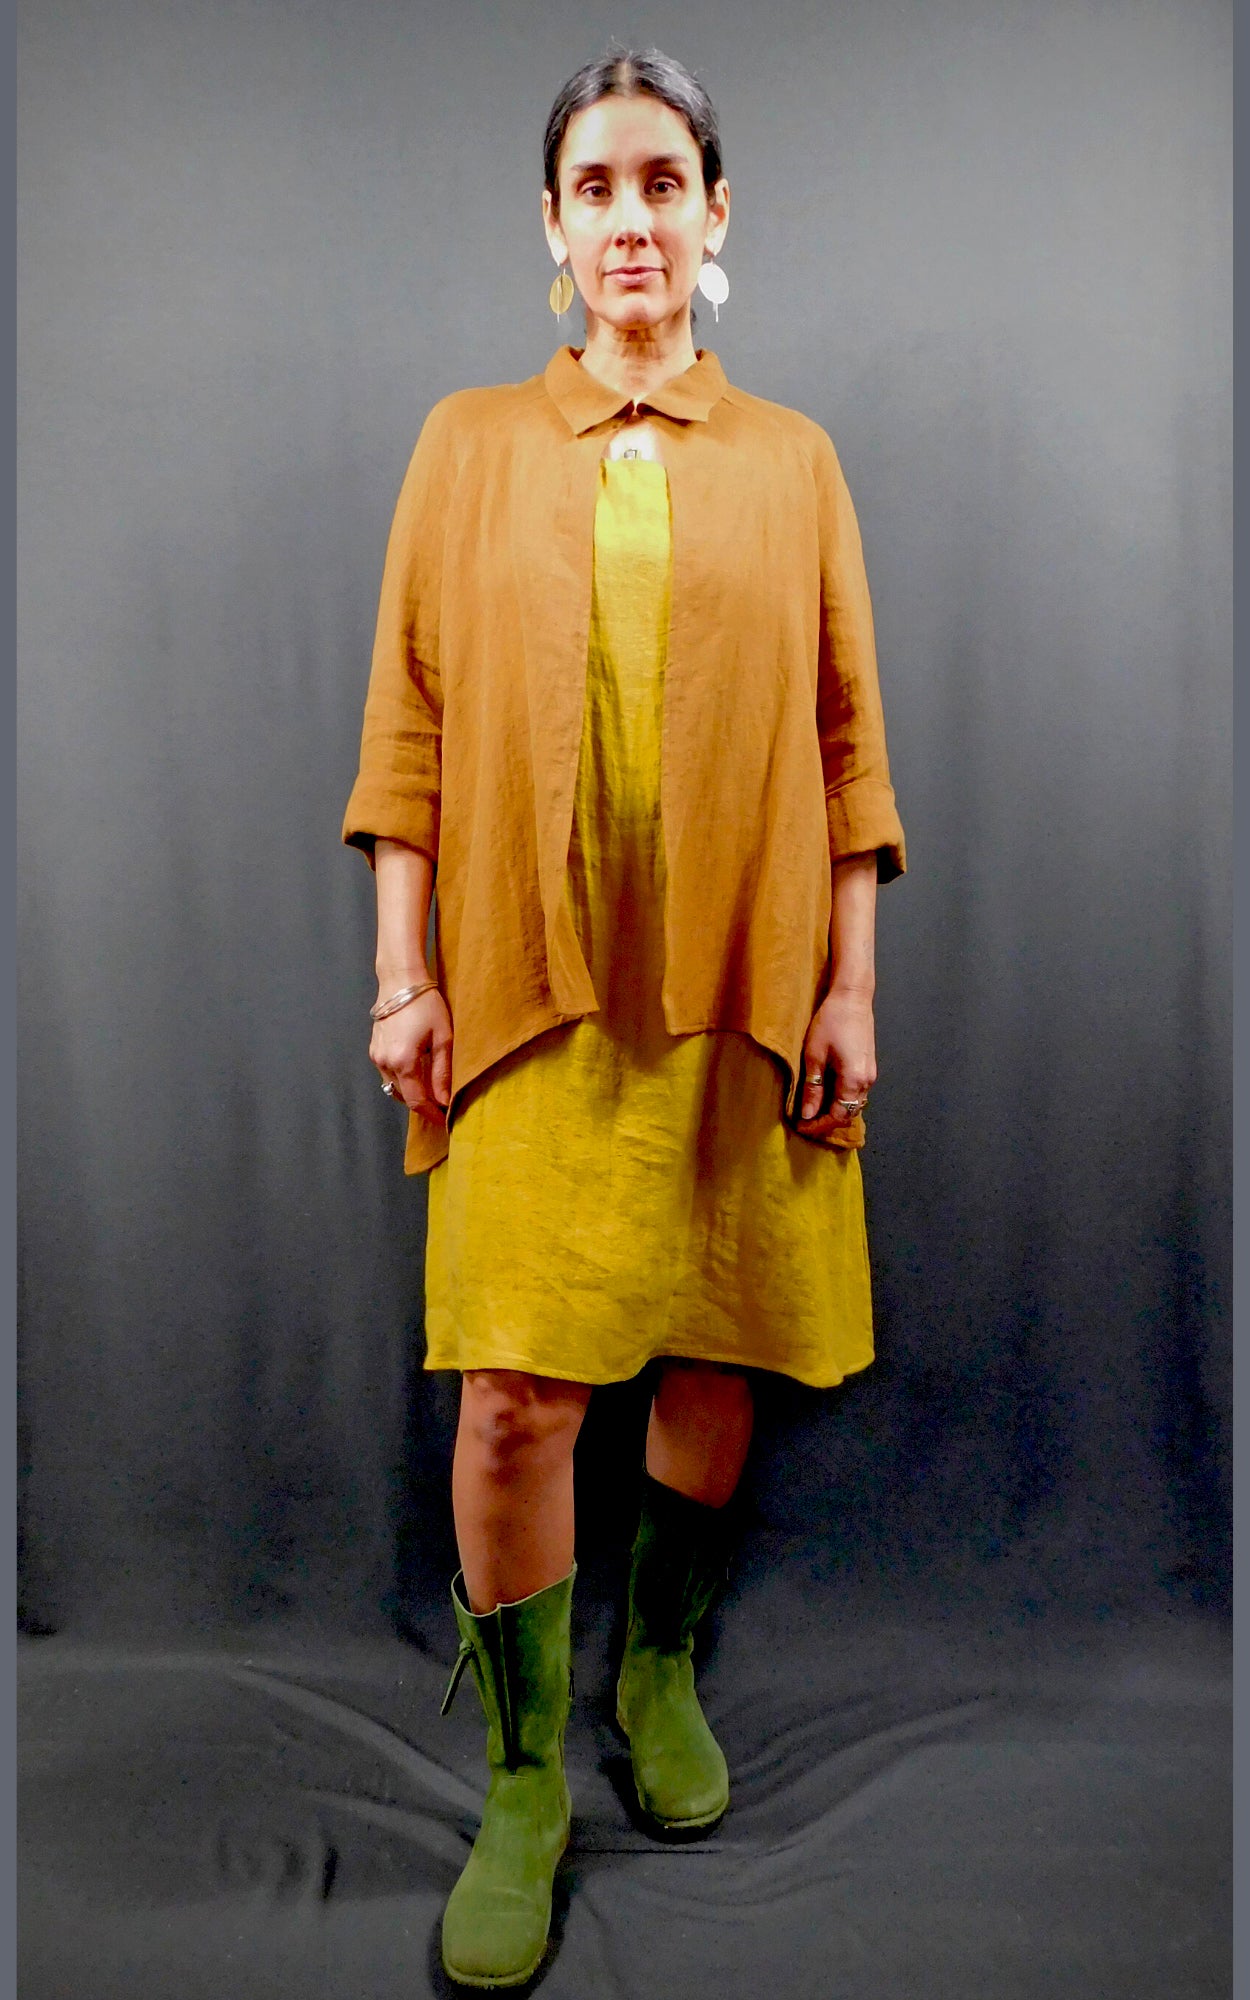 100% Linen Colour Amber Yellow Gold Sleeveless Dress with pockets worn under 100% Linen Raglan Sleeve Shirt Jacket Colour Caramel